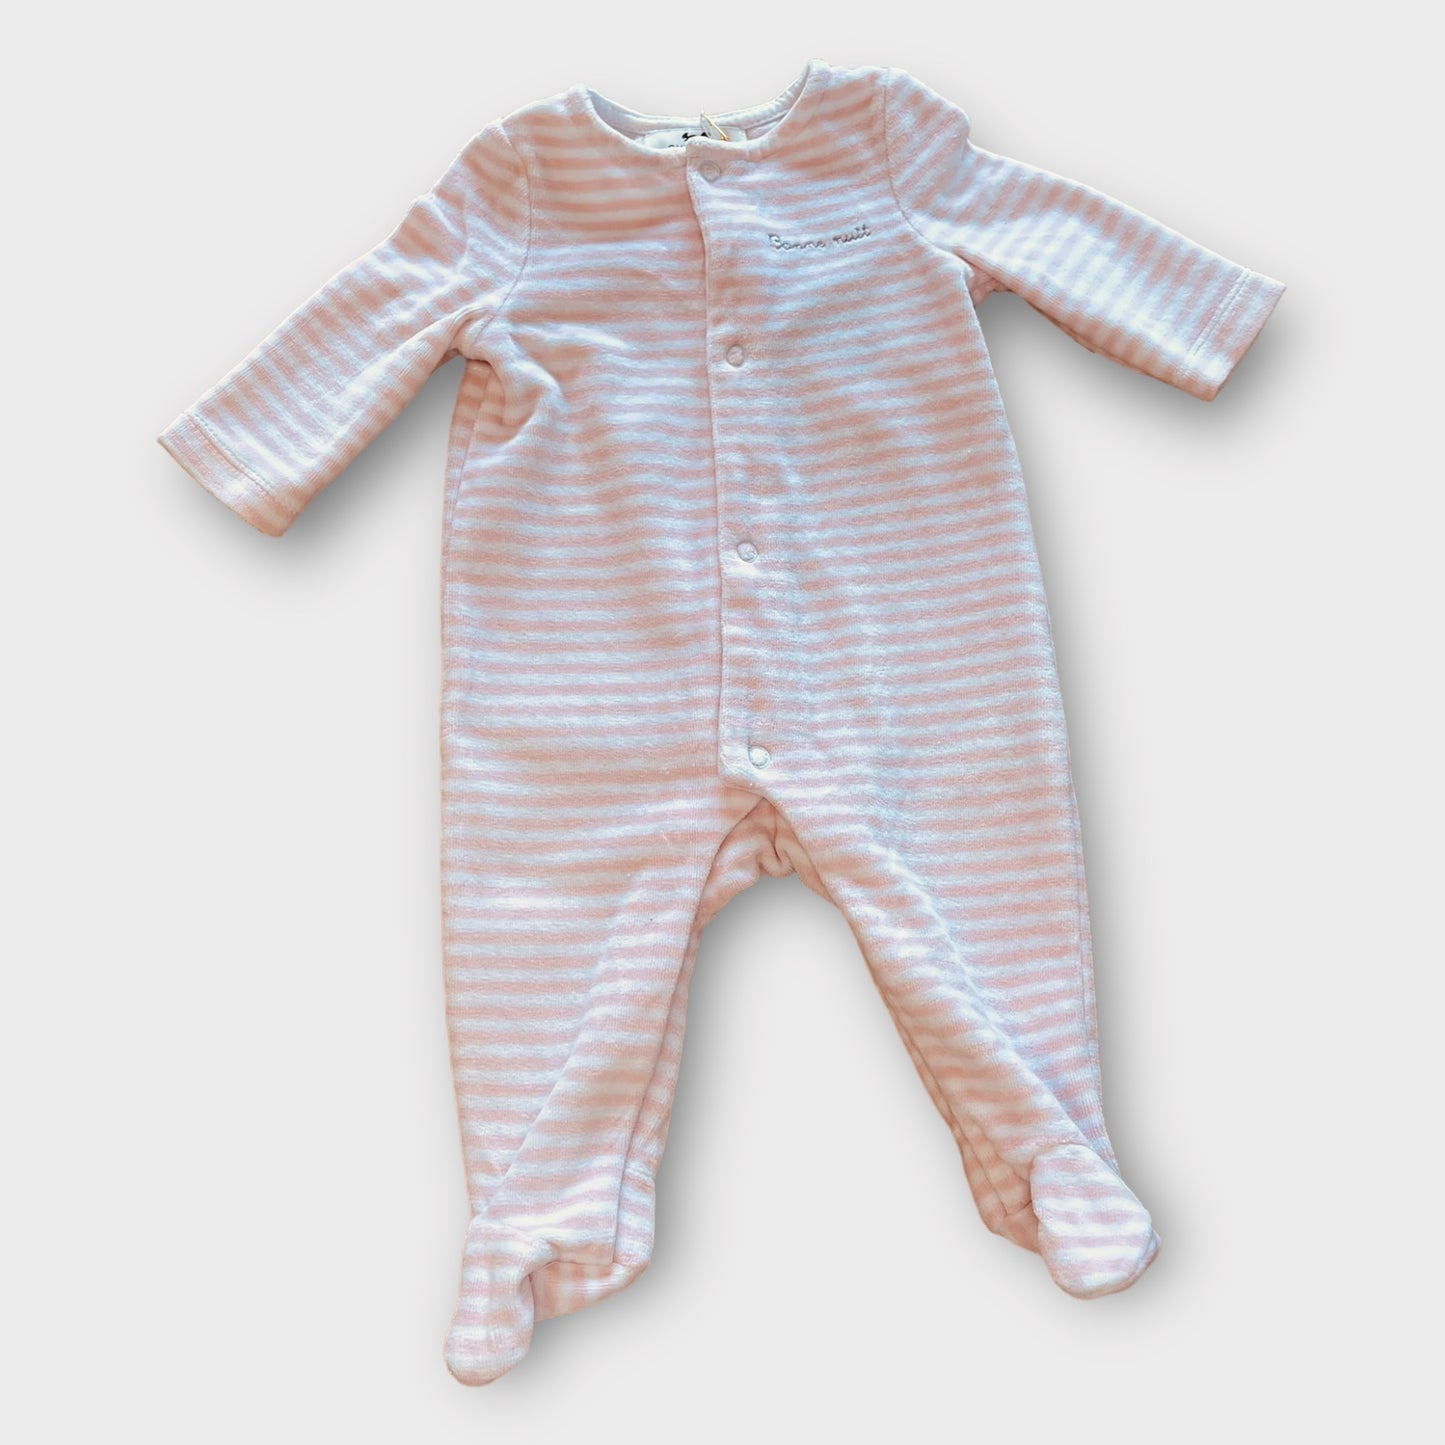 Cyrillus - pajamas - 1 month